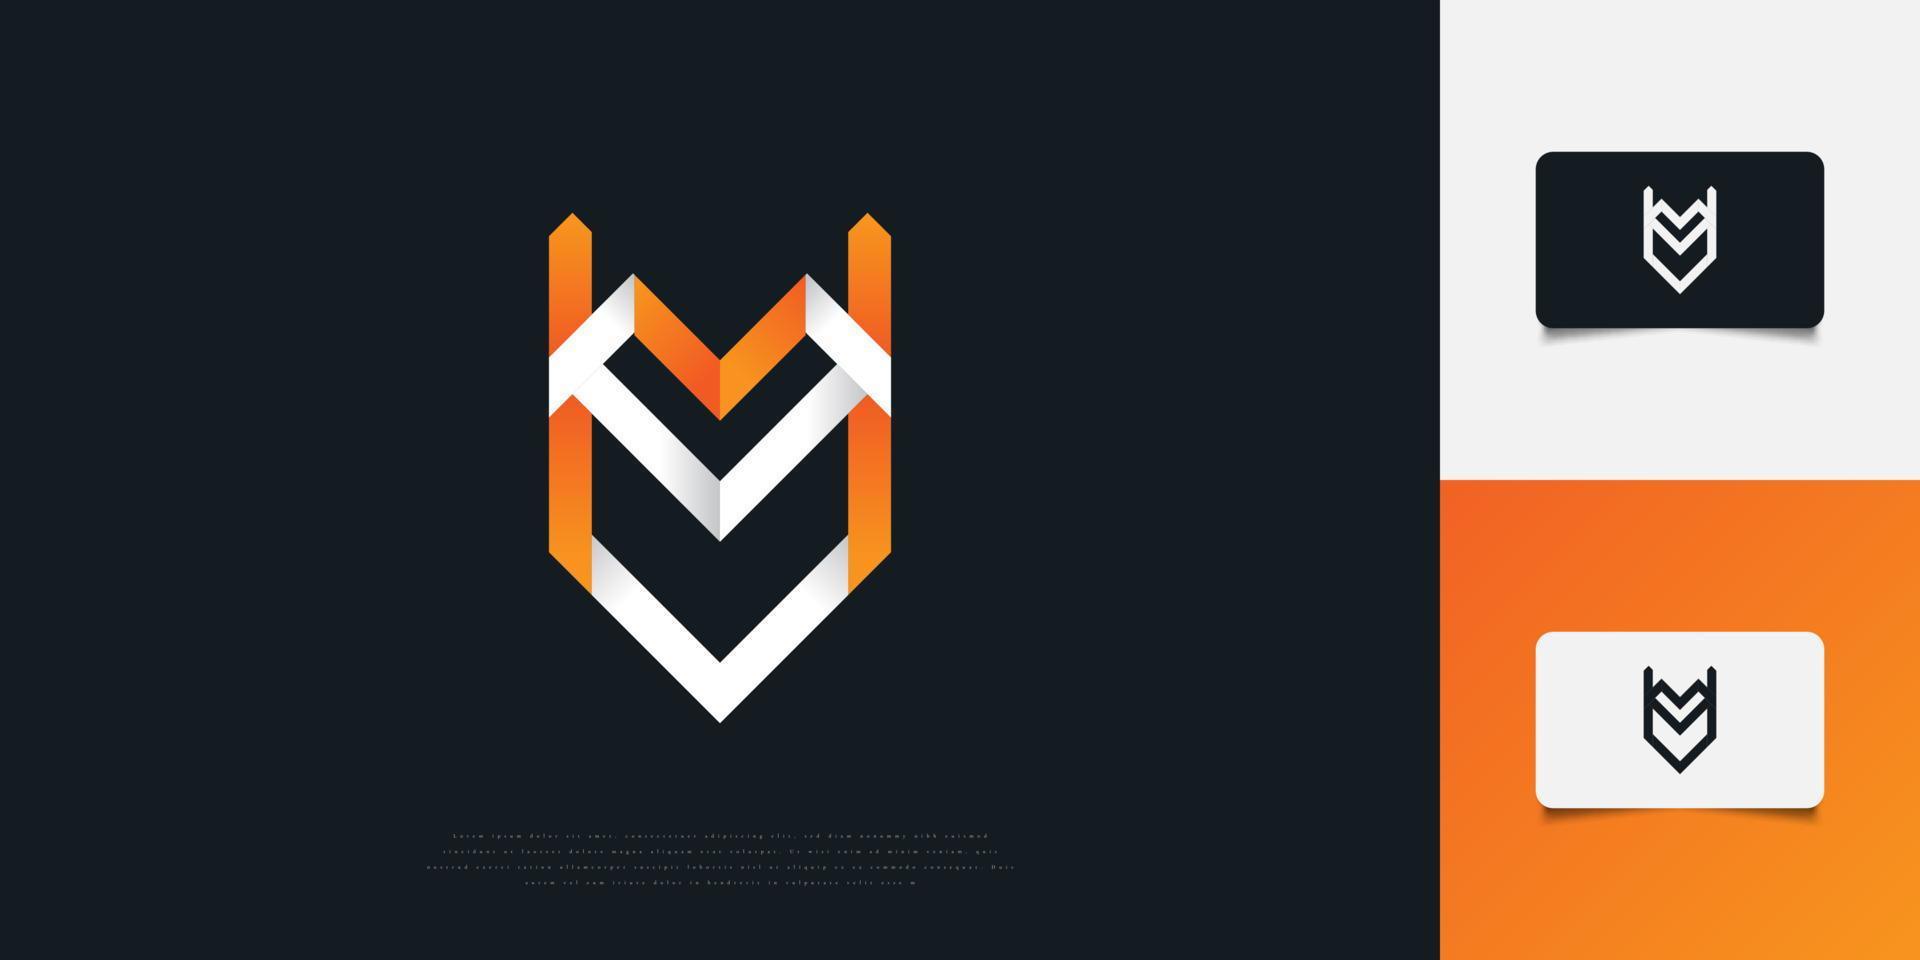 Diseño de logotipo de letra inicial vyu abstracto y moderno en degradado blanco y naranja. plantilla de diseño de logotipo de monograma vu o uv. símbolo del alfabeto gráfico para la identidad empresarial corporativa vector